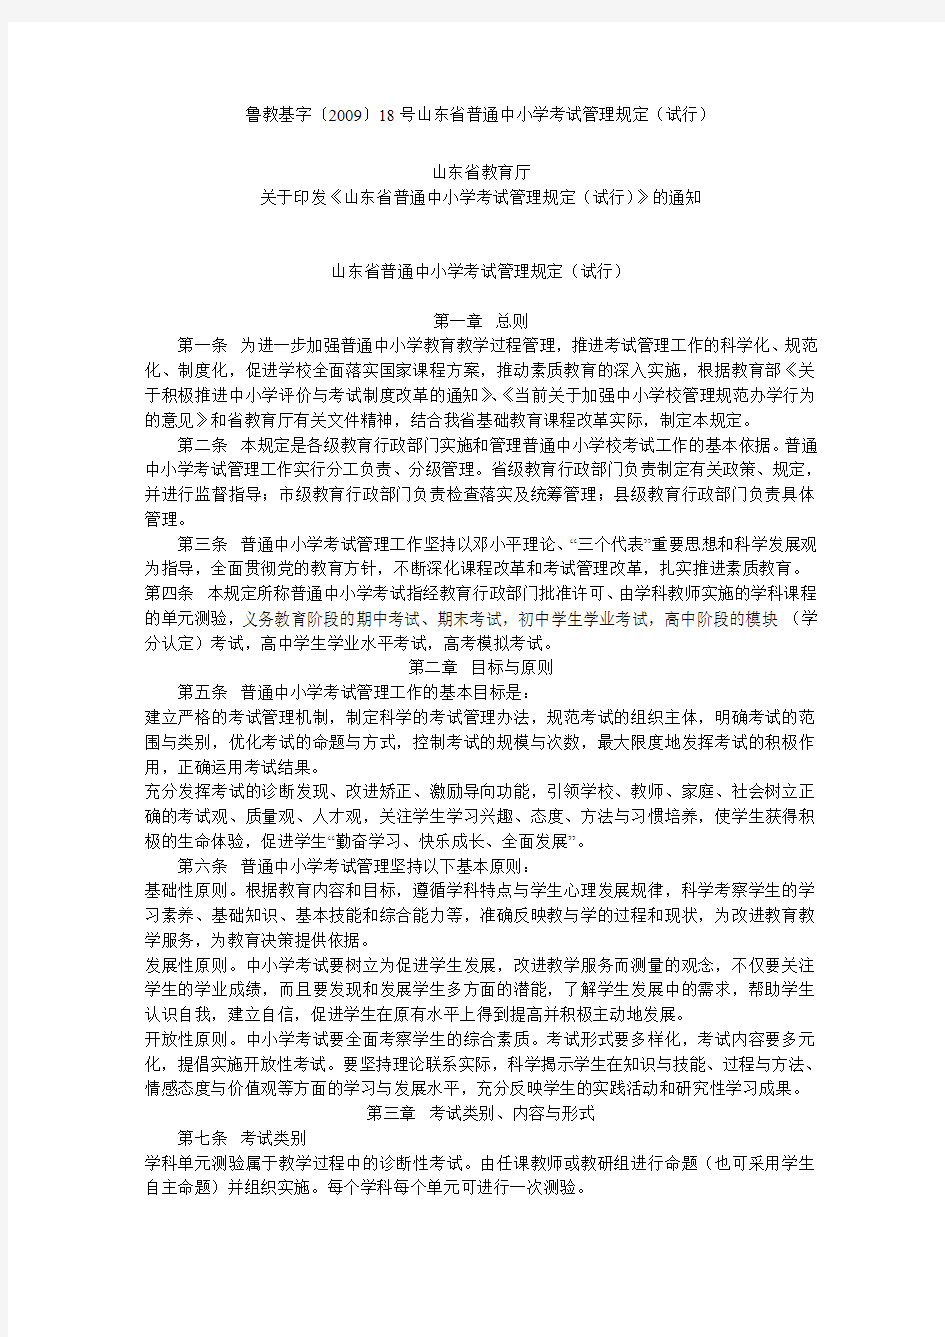 鲁教基字〔2009〕18号山东省普通中小学考试管理规定